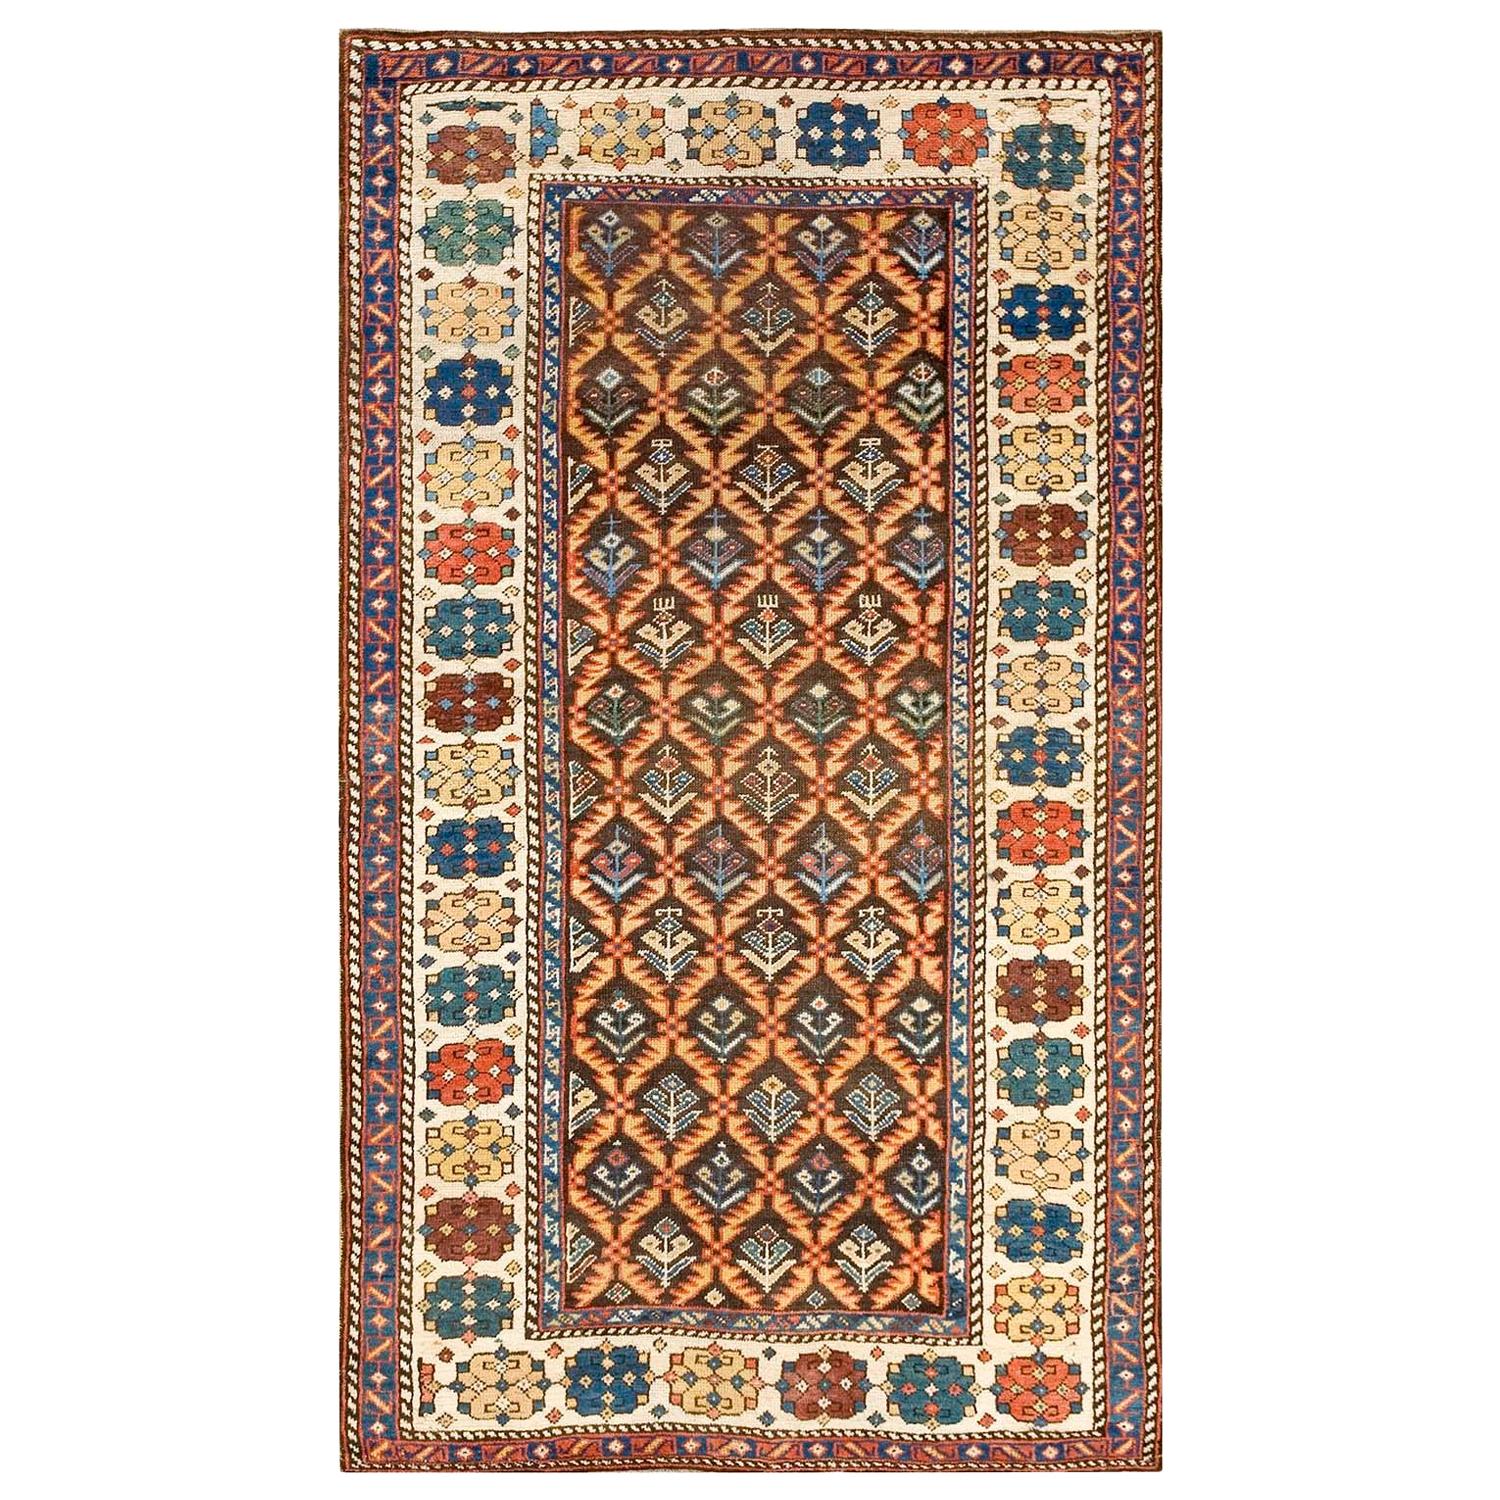 Kaukasischer Karabagh-Teppich des späten 19. Jahrhunderts ( 3''10 x 6''6 - 116 x 198)